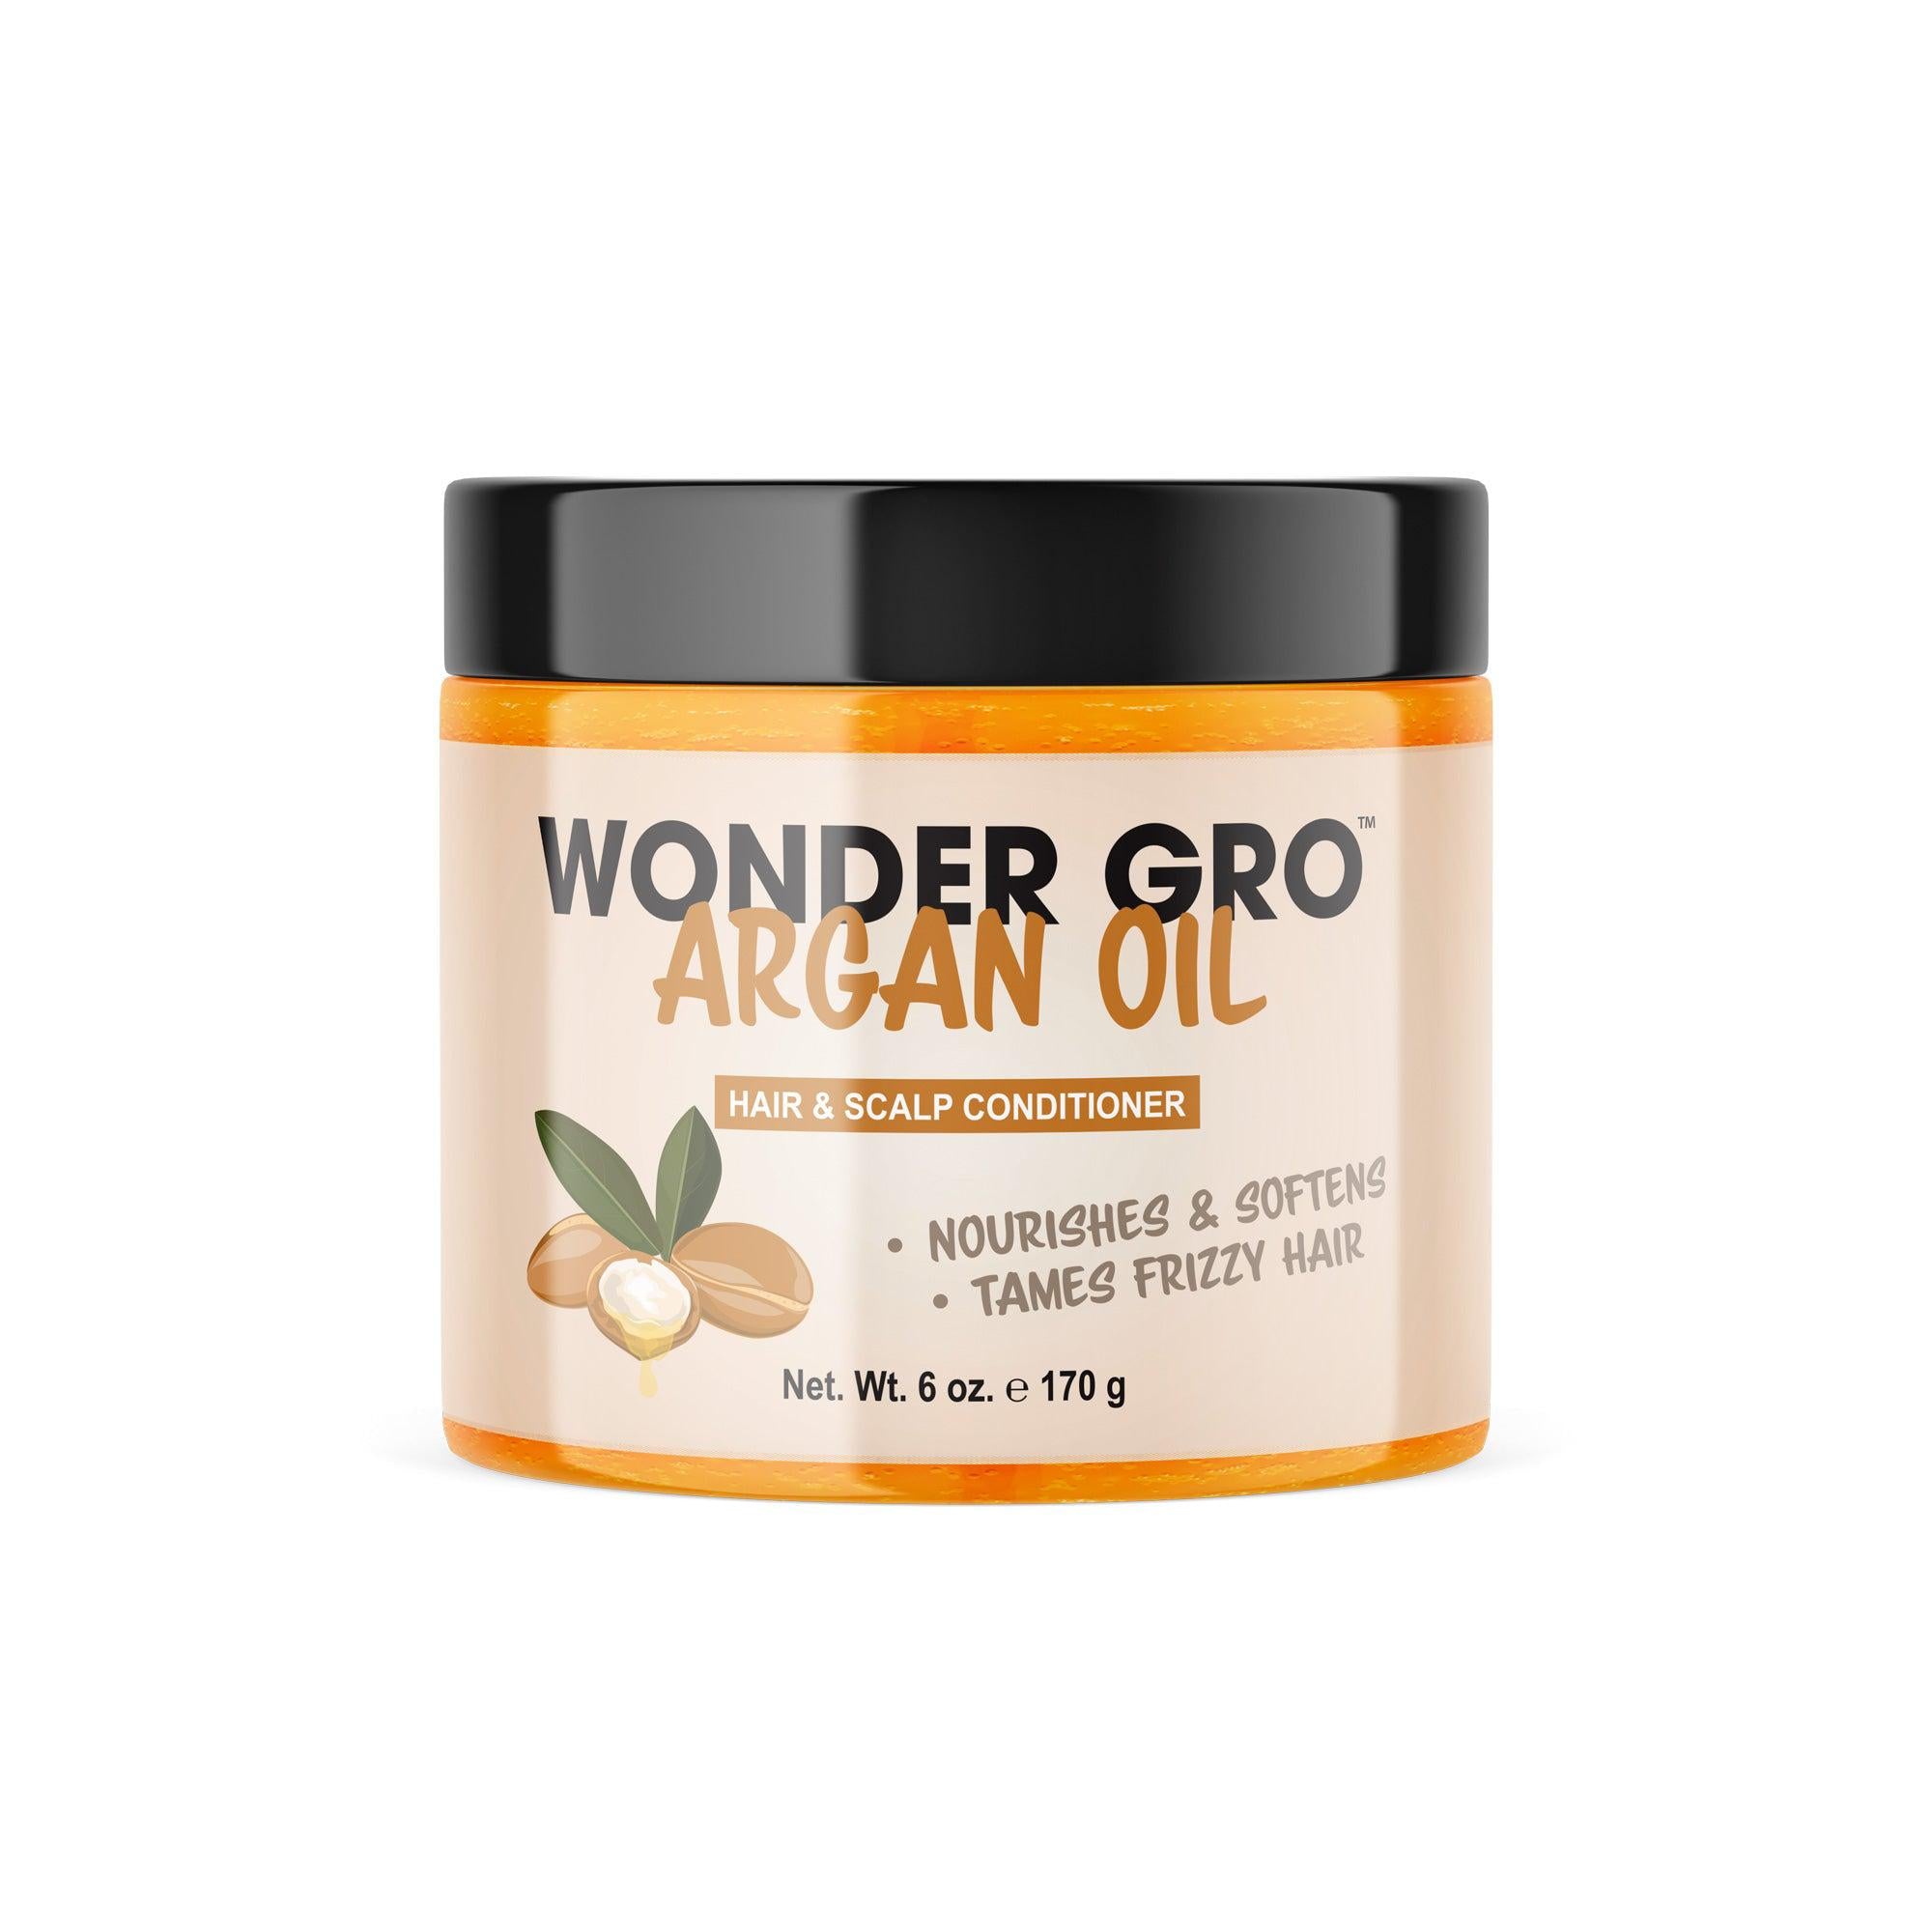 Wonder Gro Argan Oil Hair & Scalp Conditioner